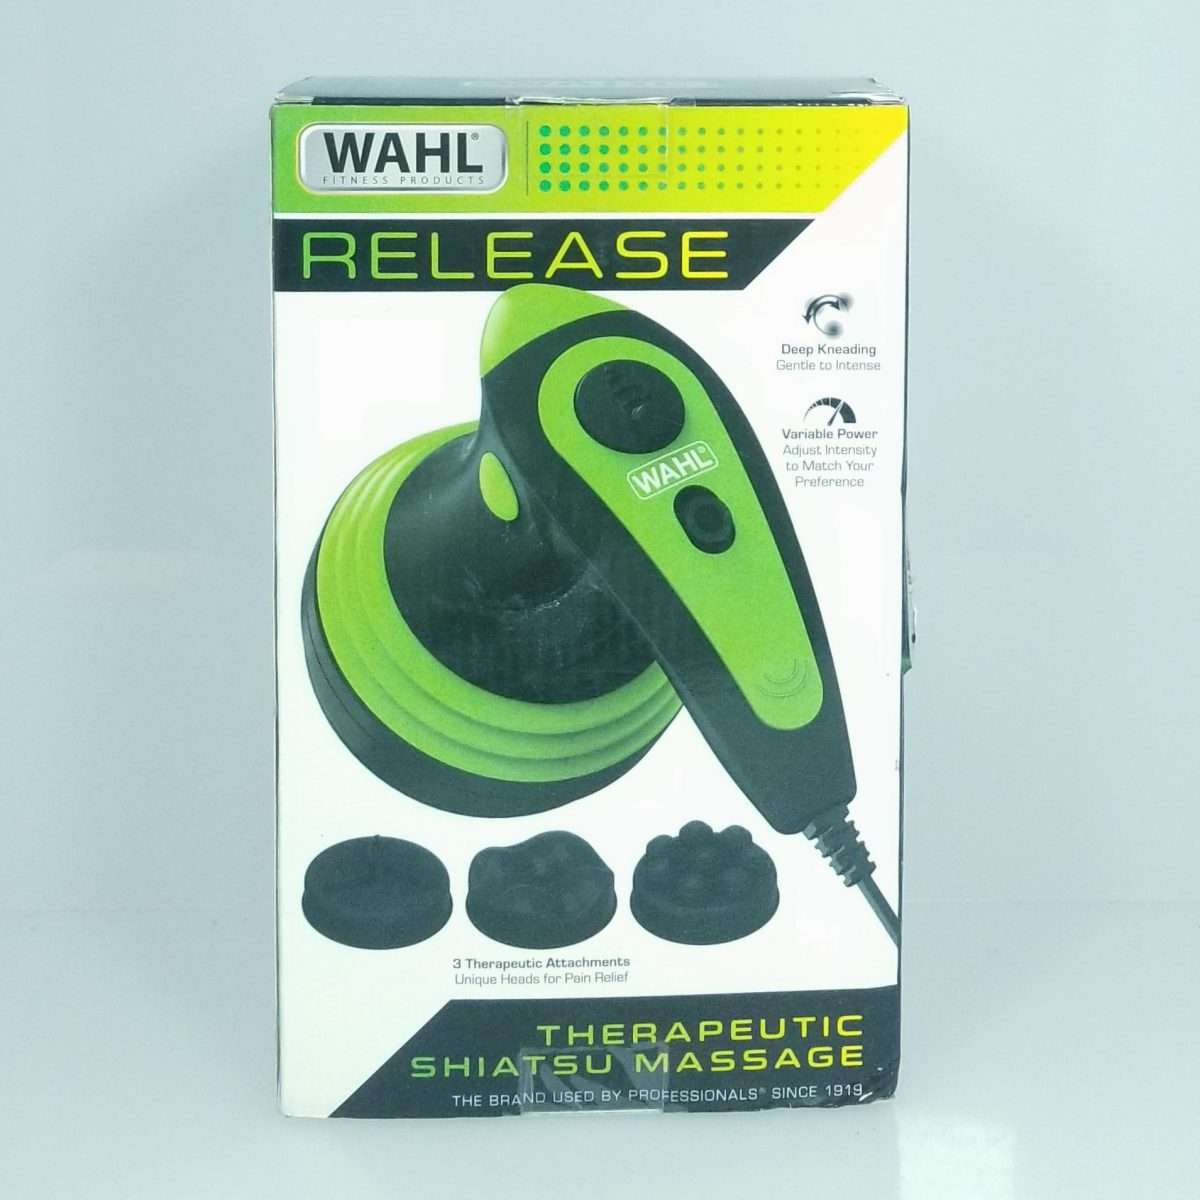 WAHL (4239) RELEASE Therapeutic Shiatsu Massager w/ 3 Attachment Heads ...